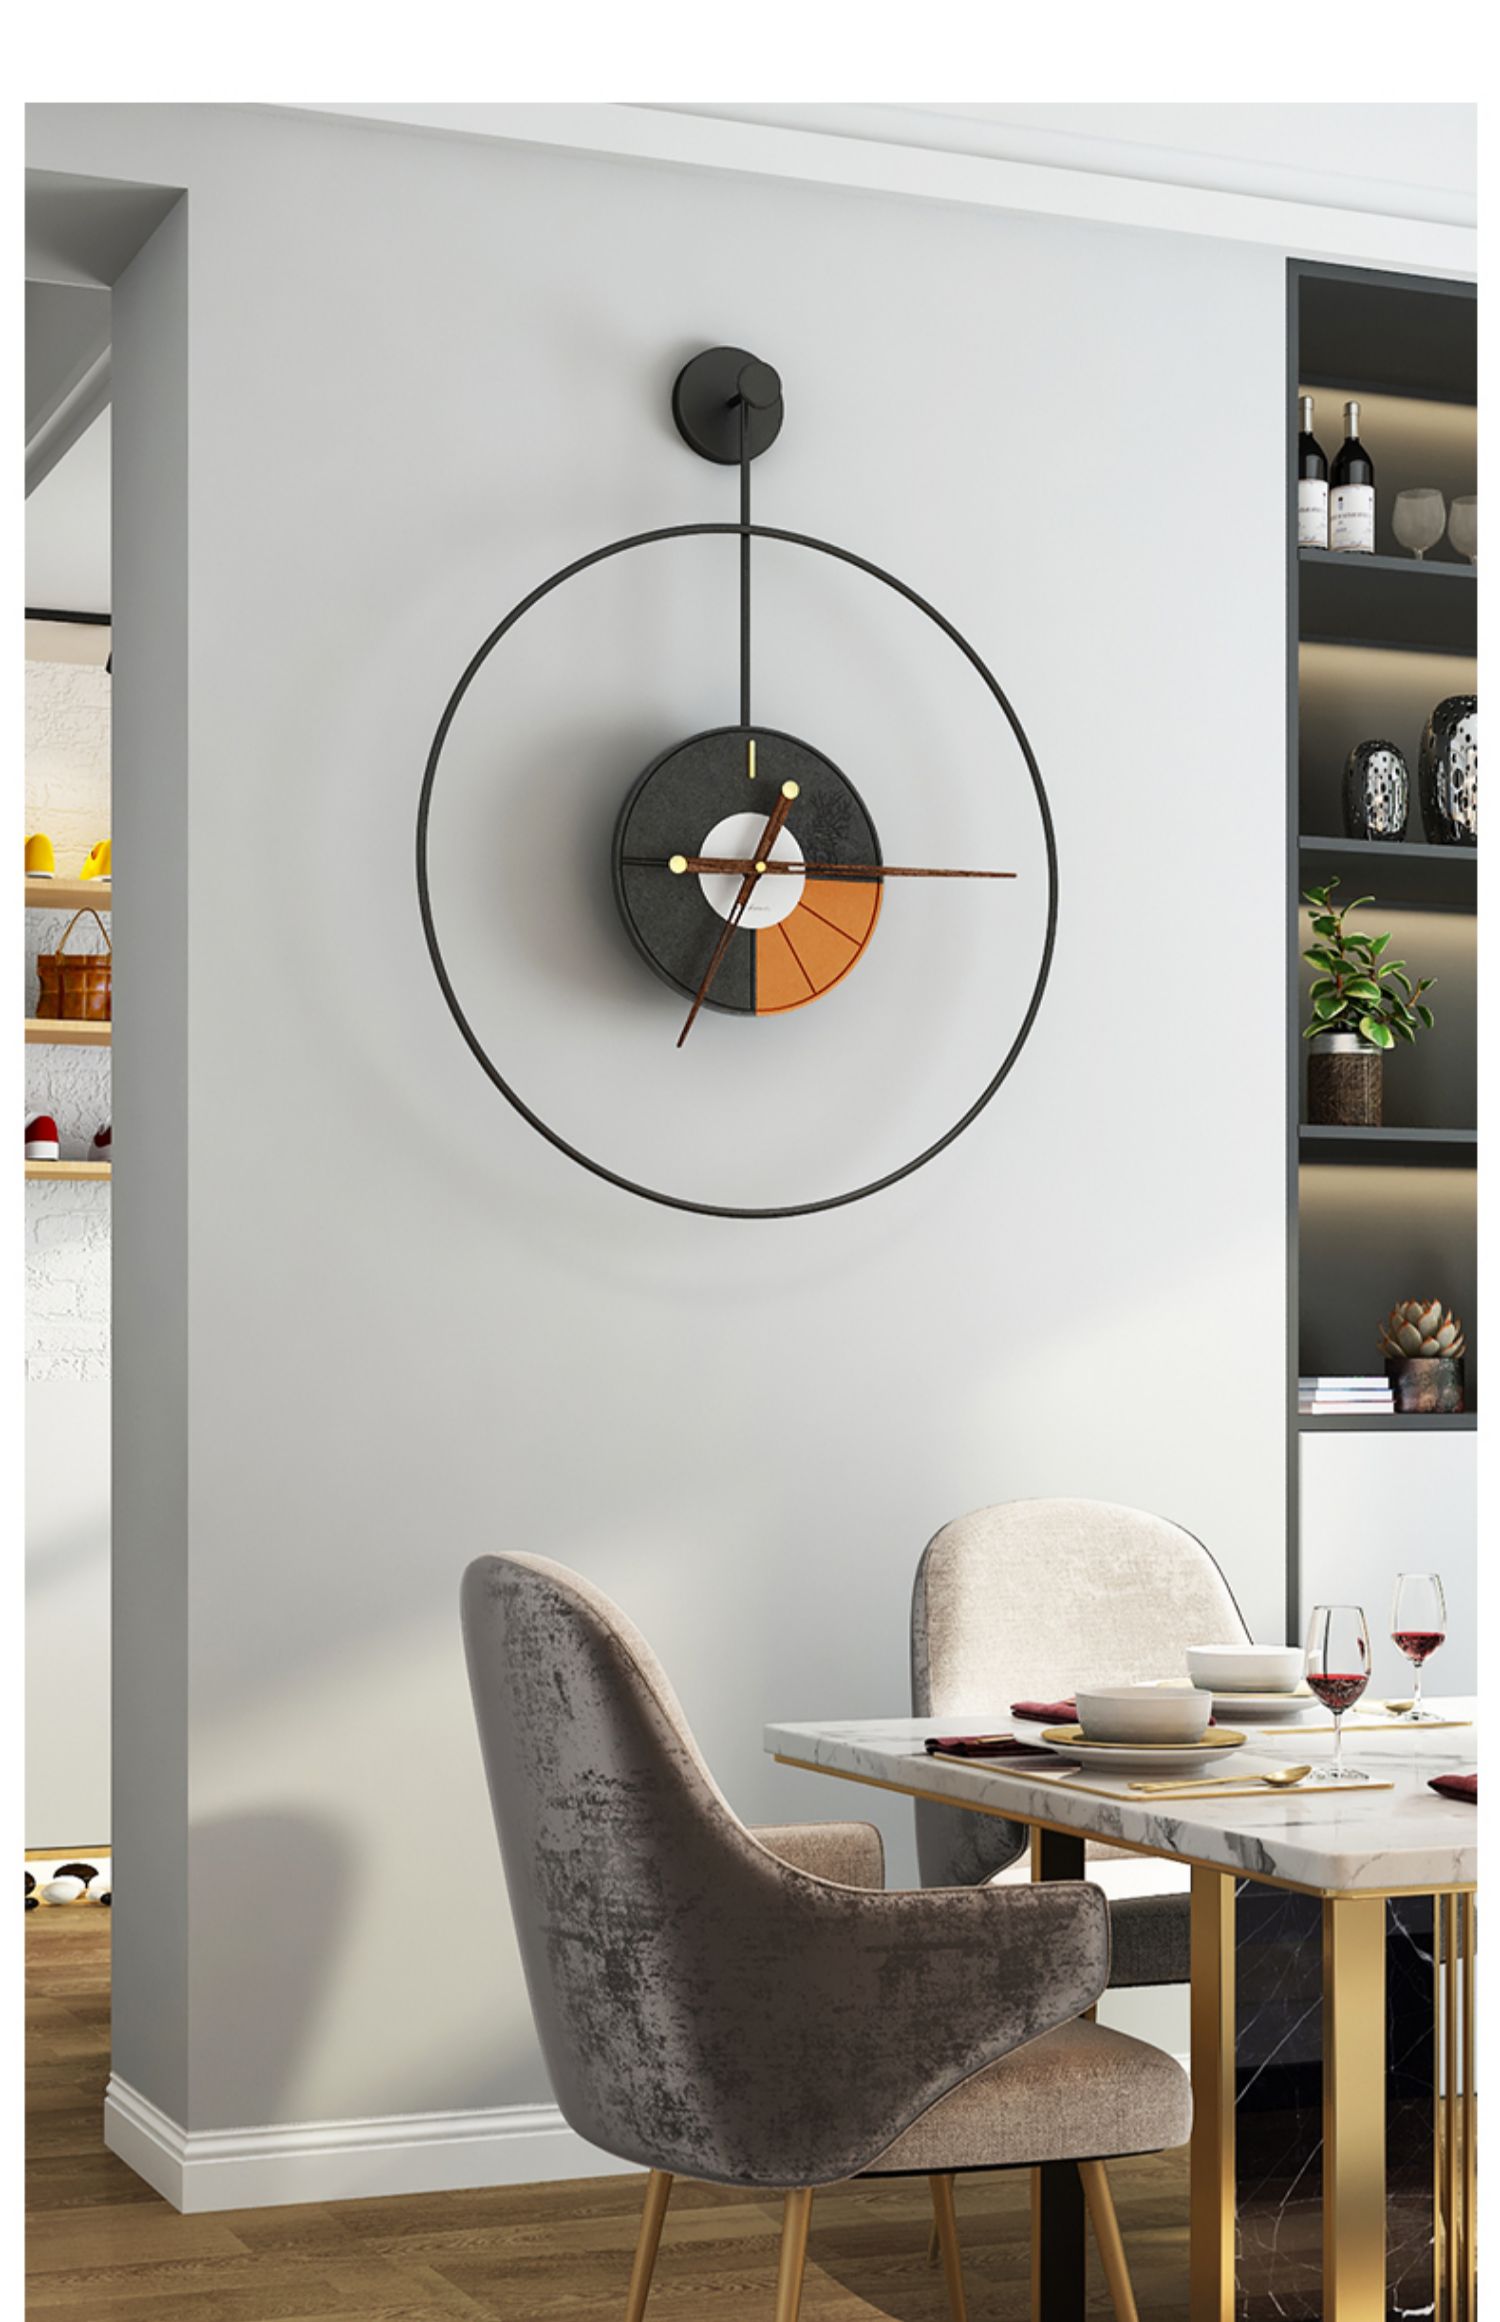 芳居道轻奢高端西班牙极简挂墙挂钟现代简约家用客厅时钟艺术装饰钟表